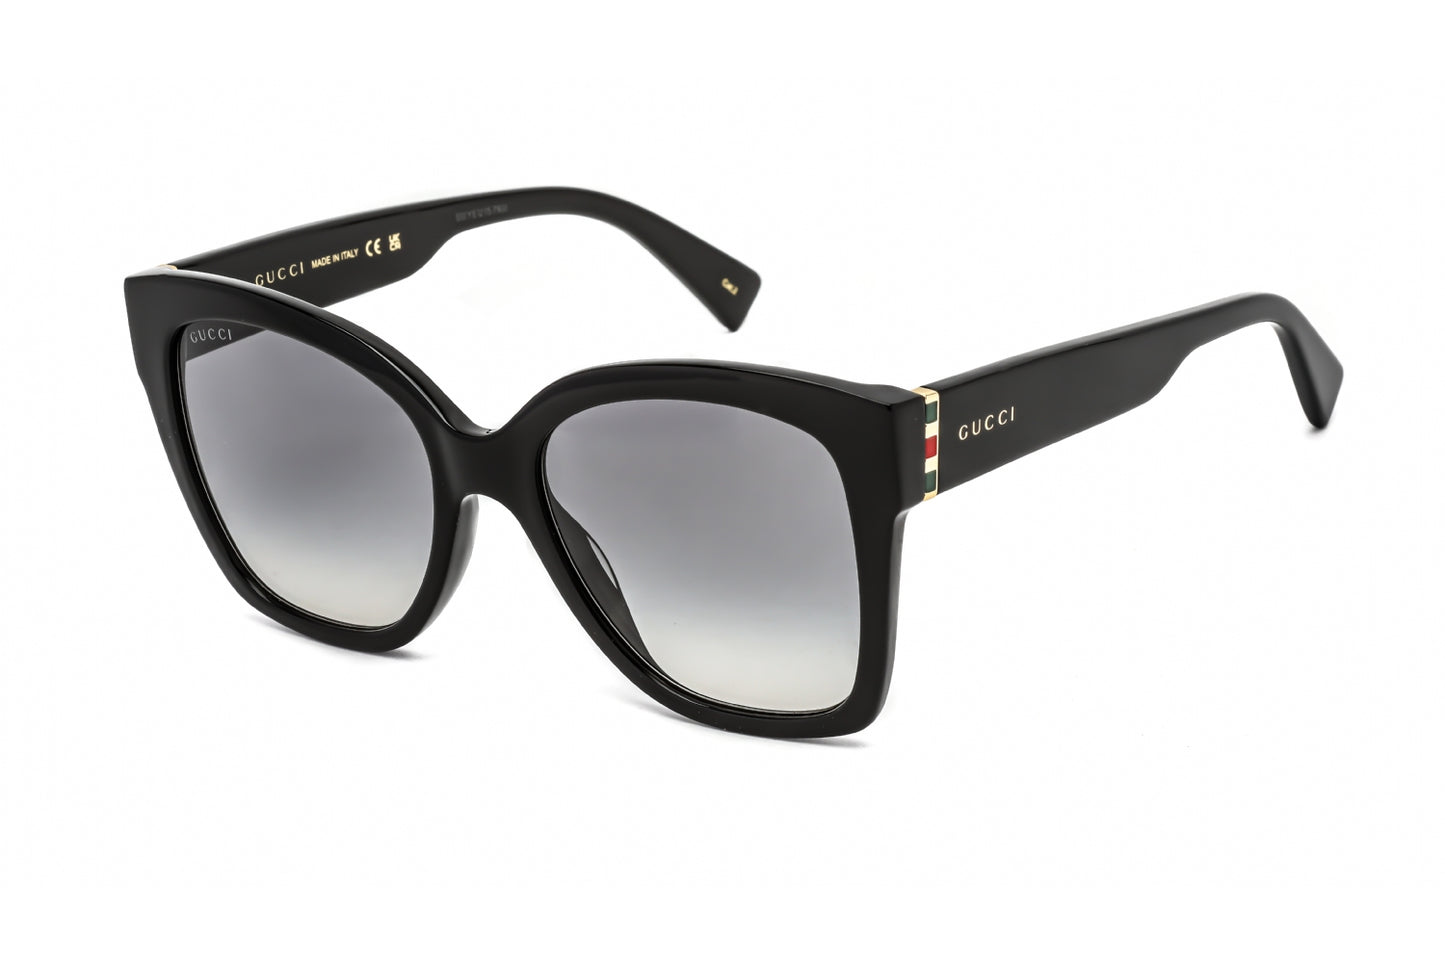 Gucci GG0459S-001 54mm New Sunglasses